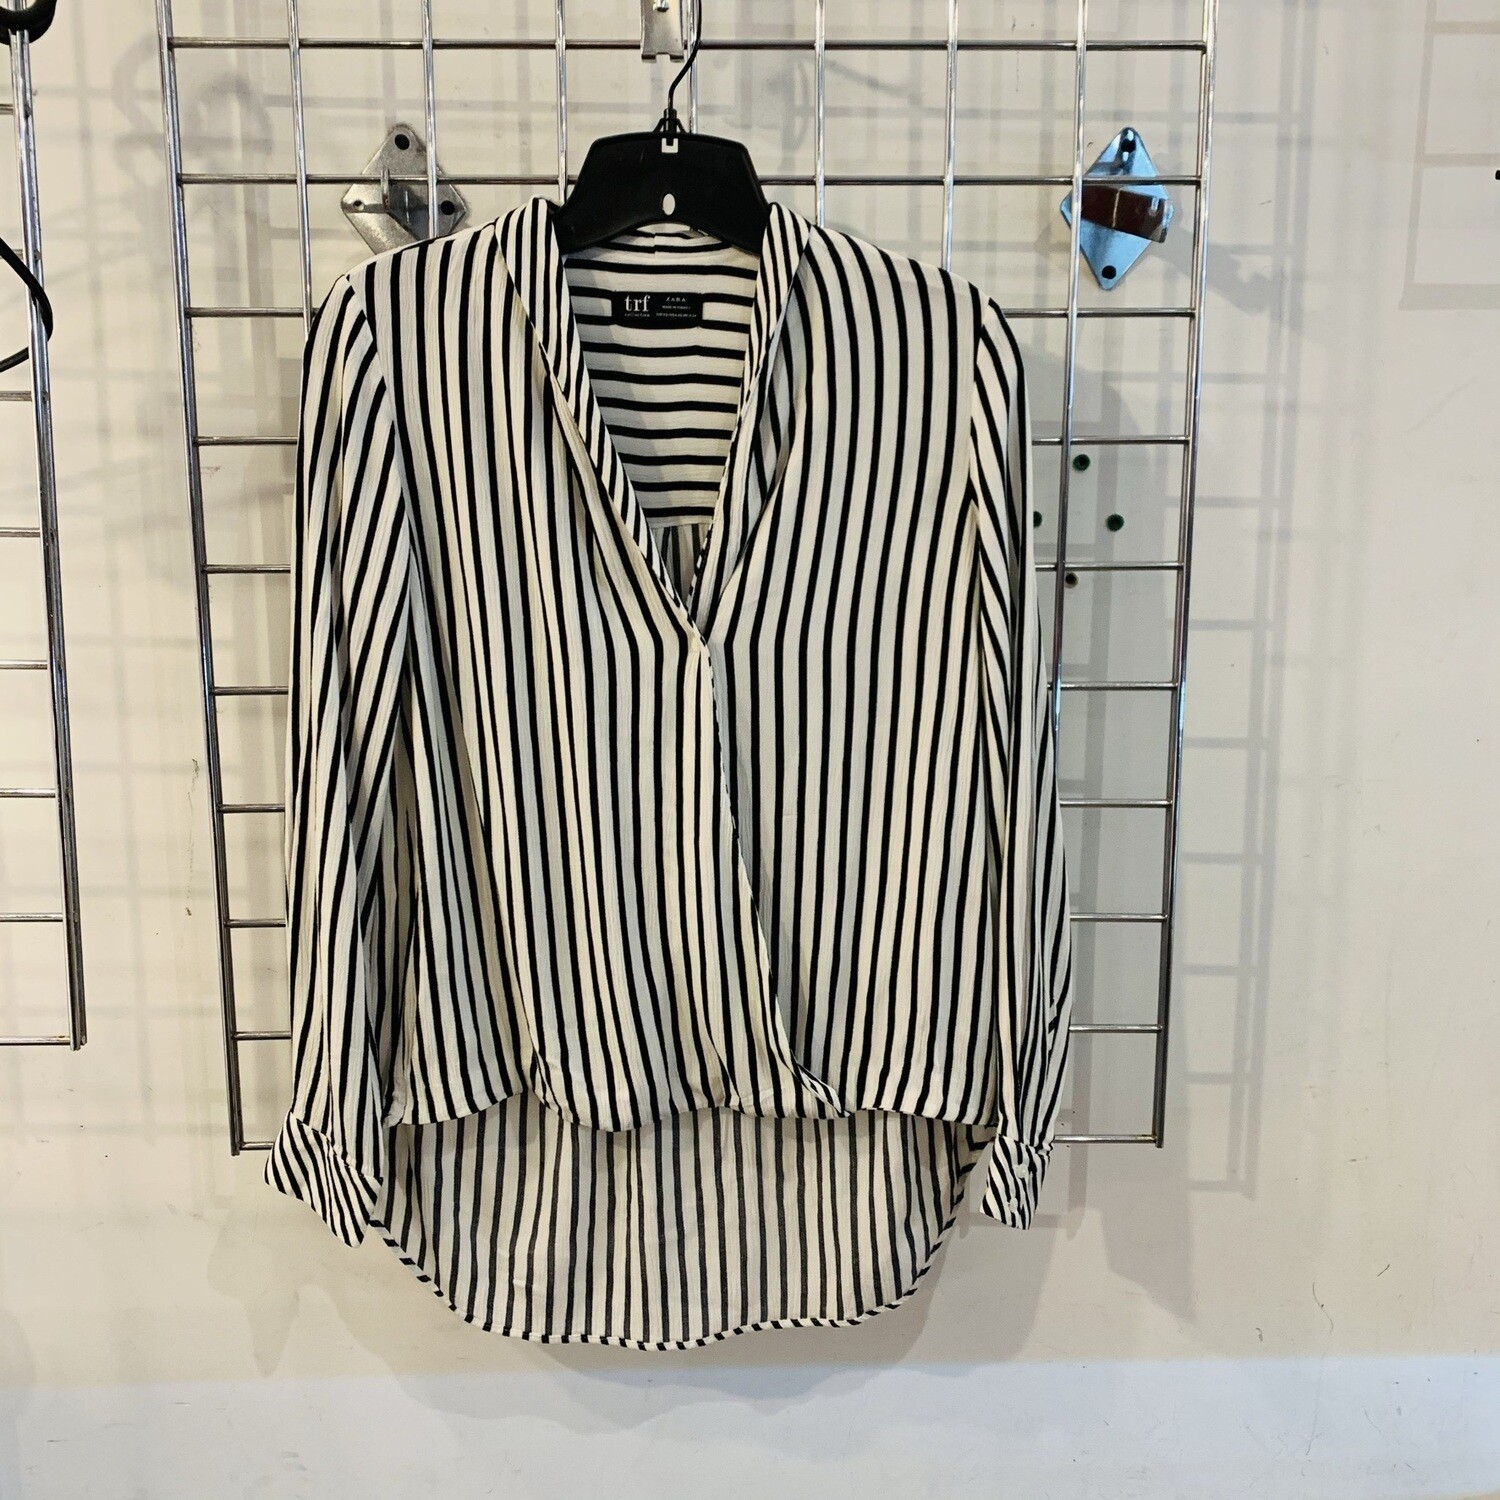 Size XS Zara TRF Striped Top